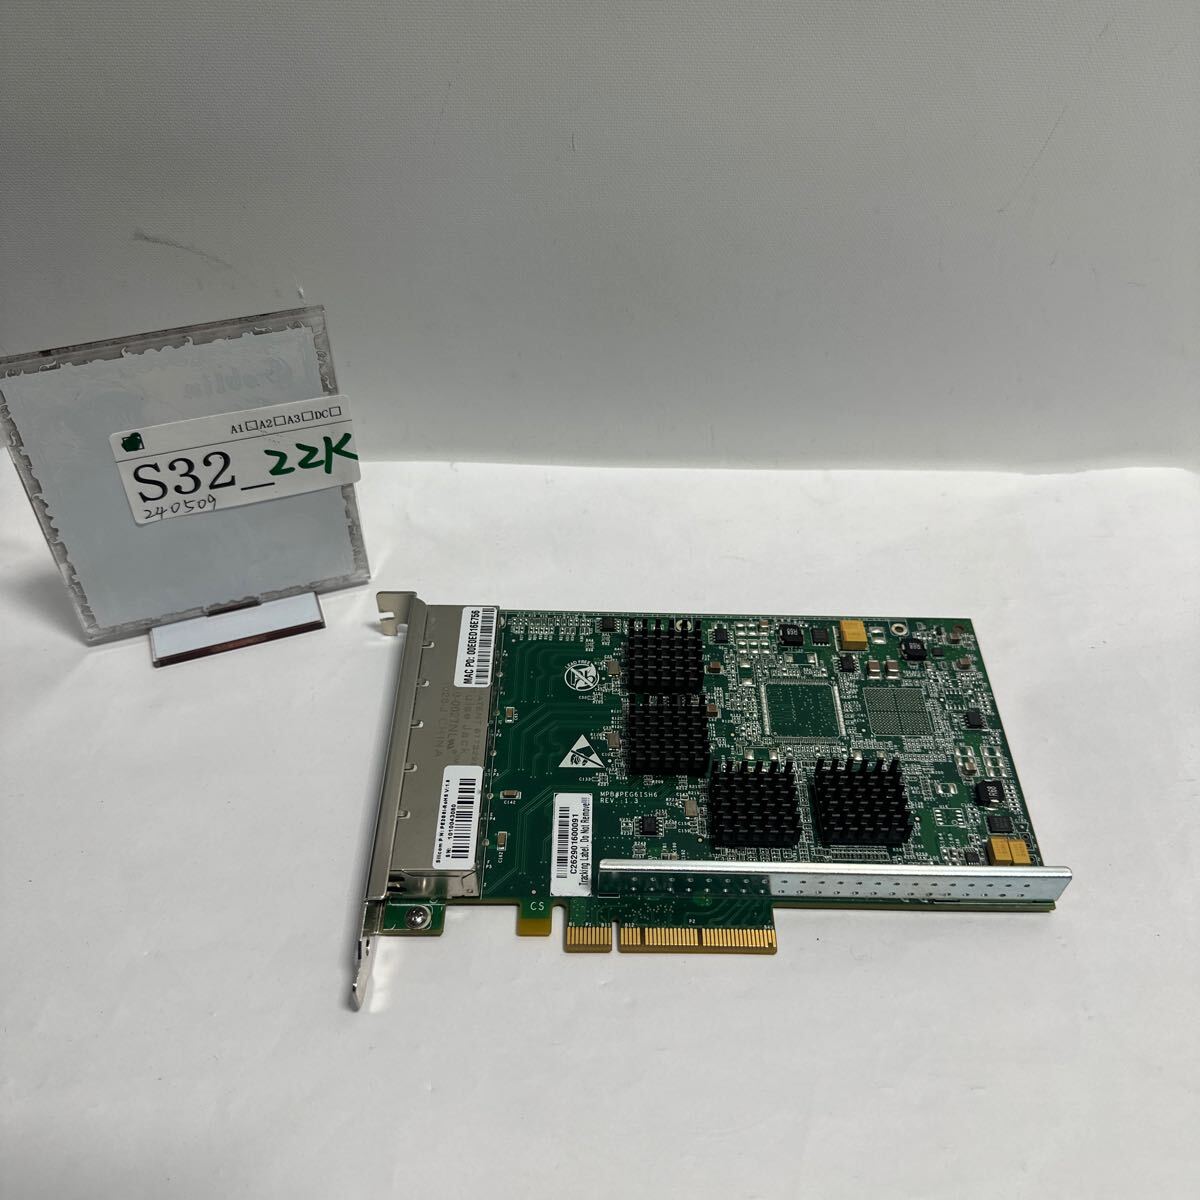 「S32_22K」Silicom 6ポート PE2G6I-ROHS V:1.6 サーバー ネットワーク アダプター カード(240509)_画像1